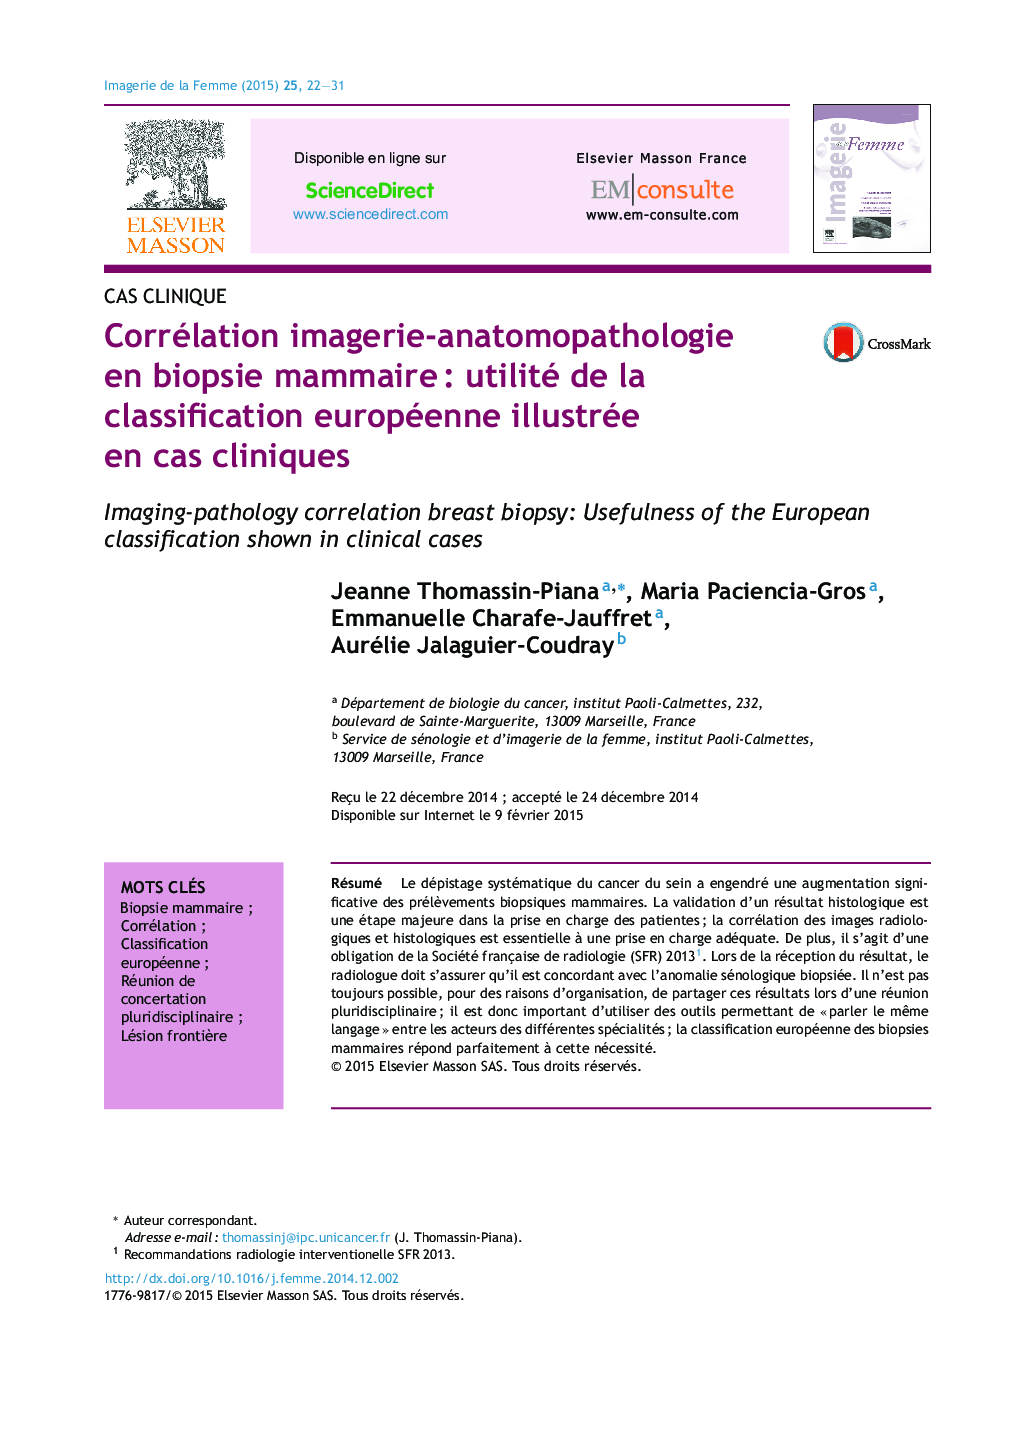 Corrélation imagerie-anatomopathologie en biopsie mammaireÂ : utilité de la classification européenne illustrée en cas cliniques